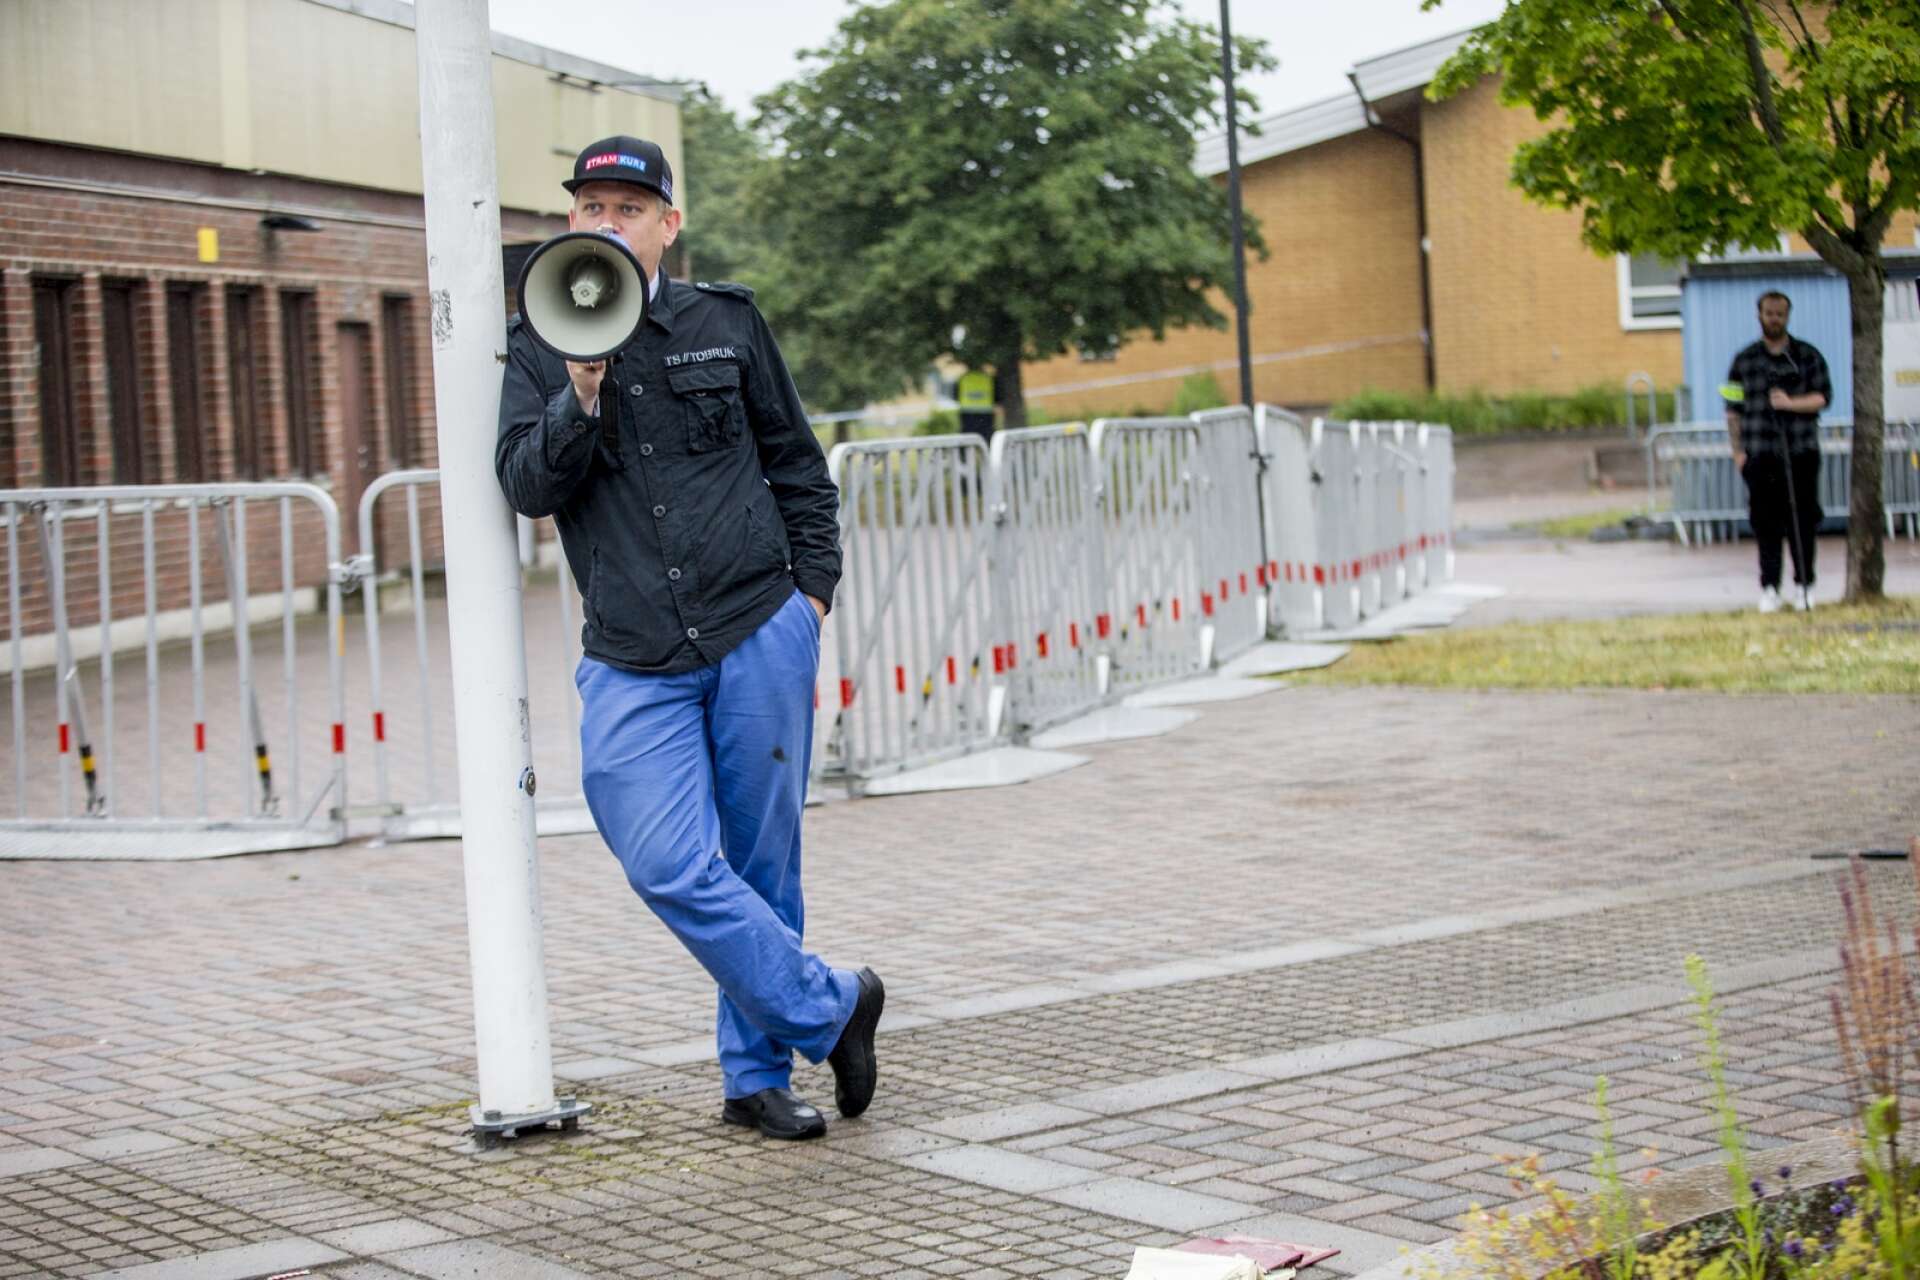 Få personer kom för att lyssna på Rasmus Paludan när han talade på Kronoparken i Karlstad under fredagsförmiddagen.